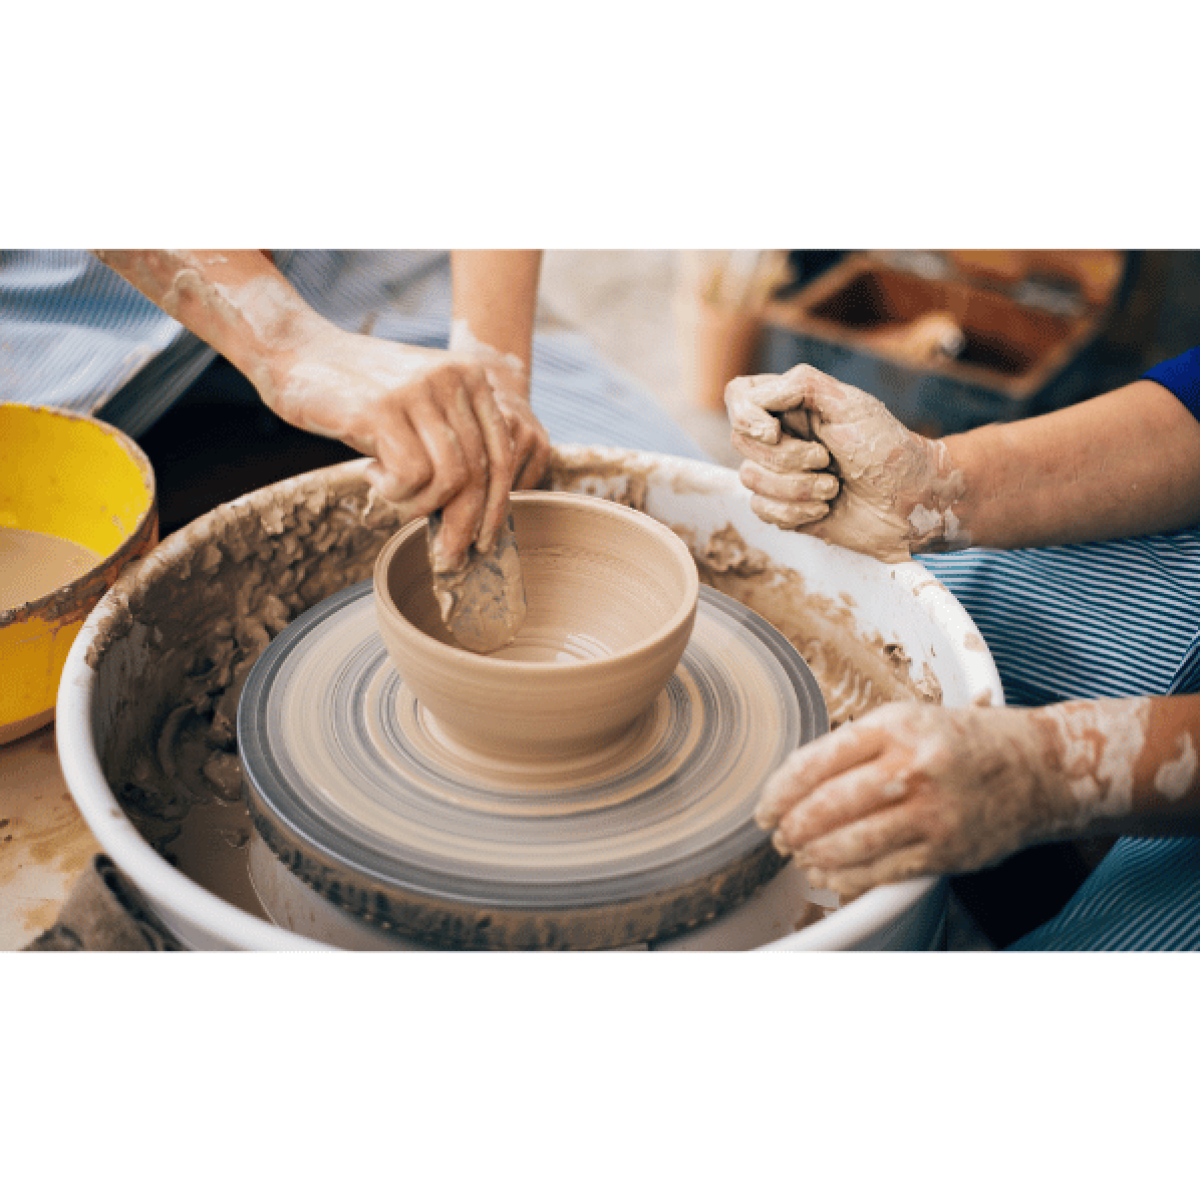 Basic Pottery Wheel Class – Tahanan Pottery Shop